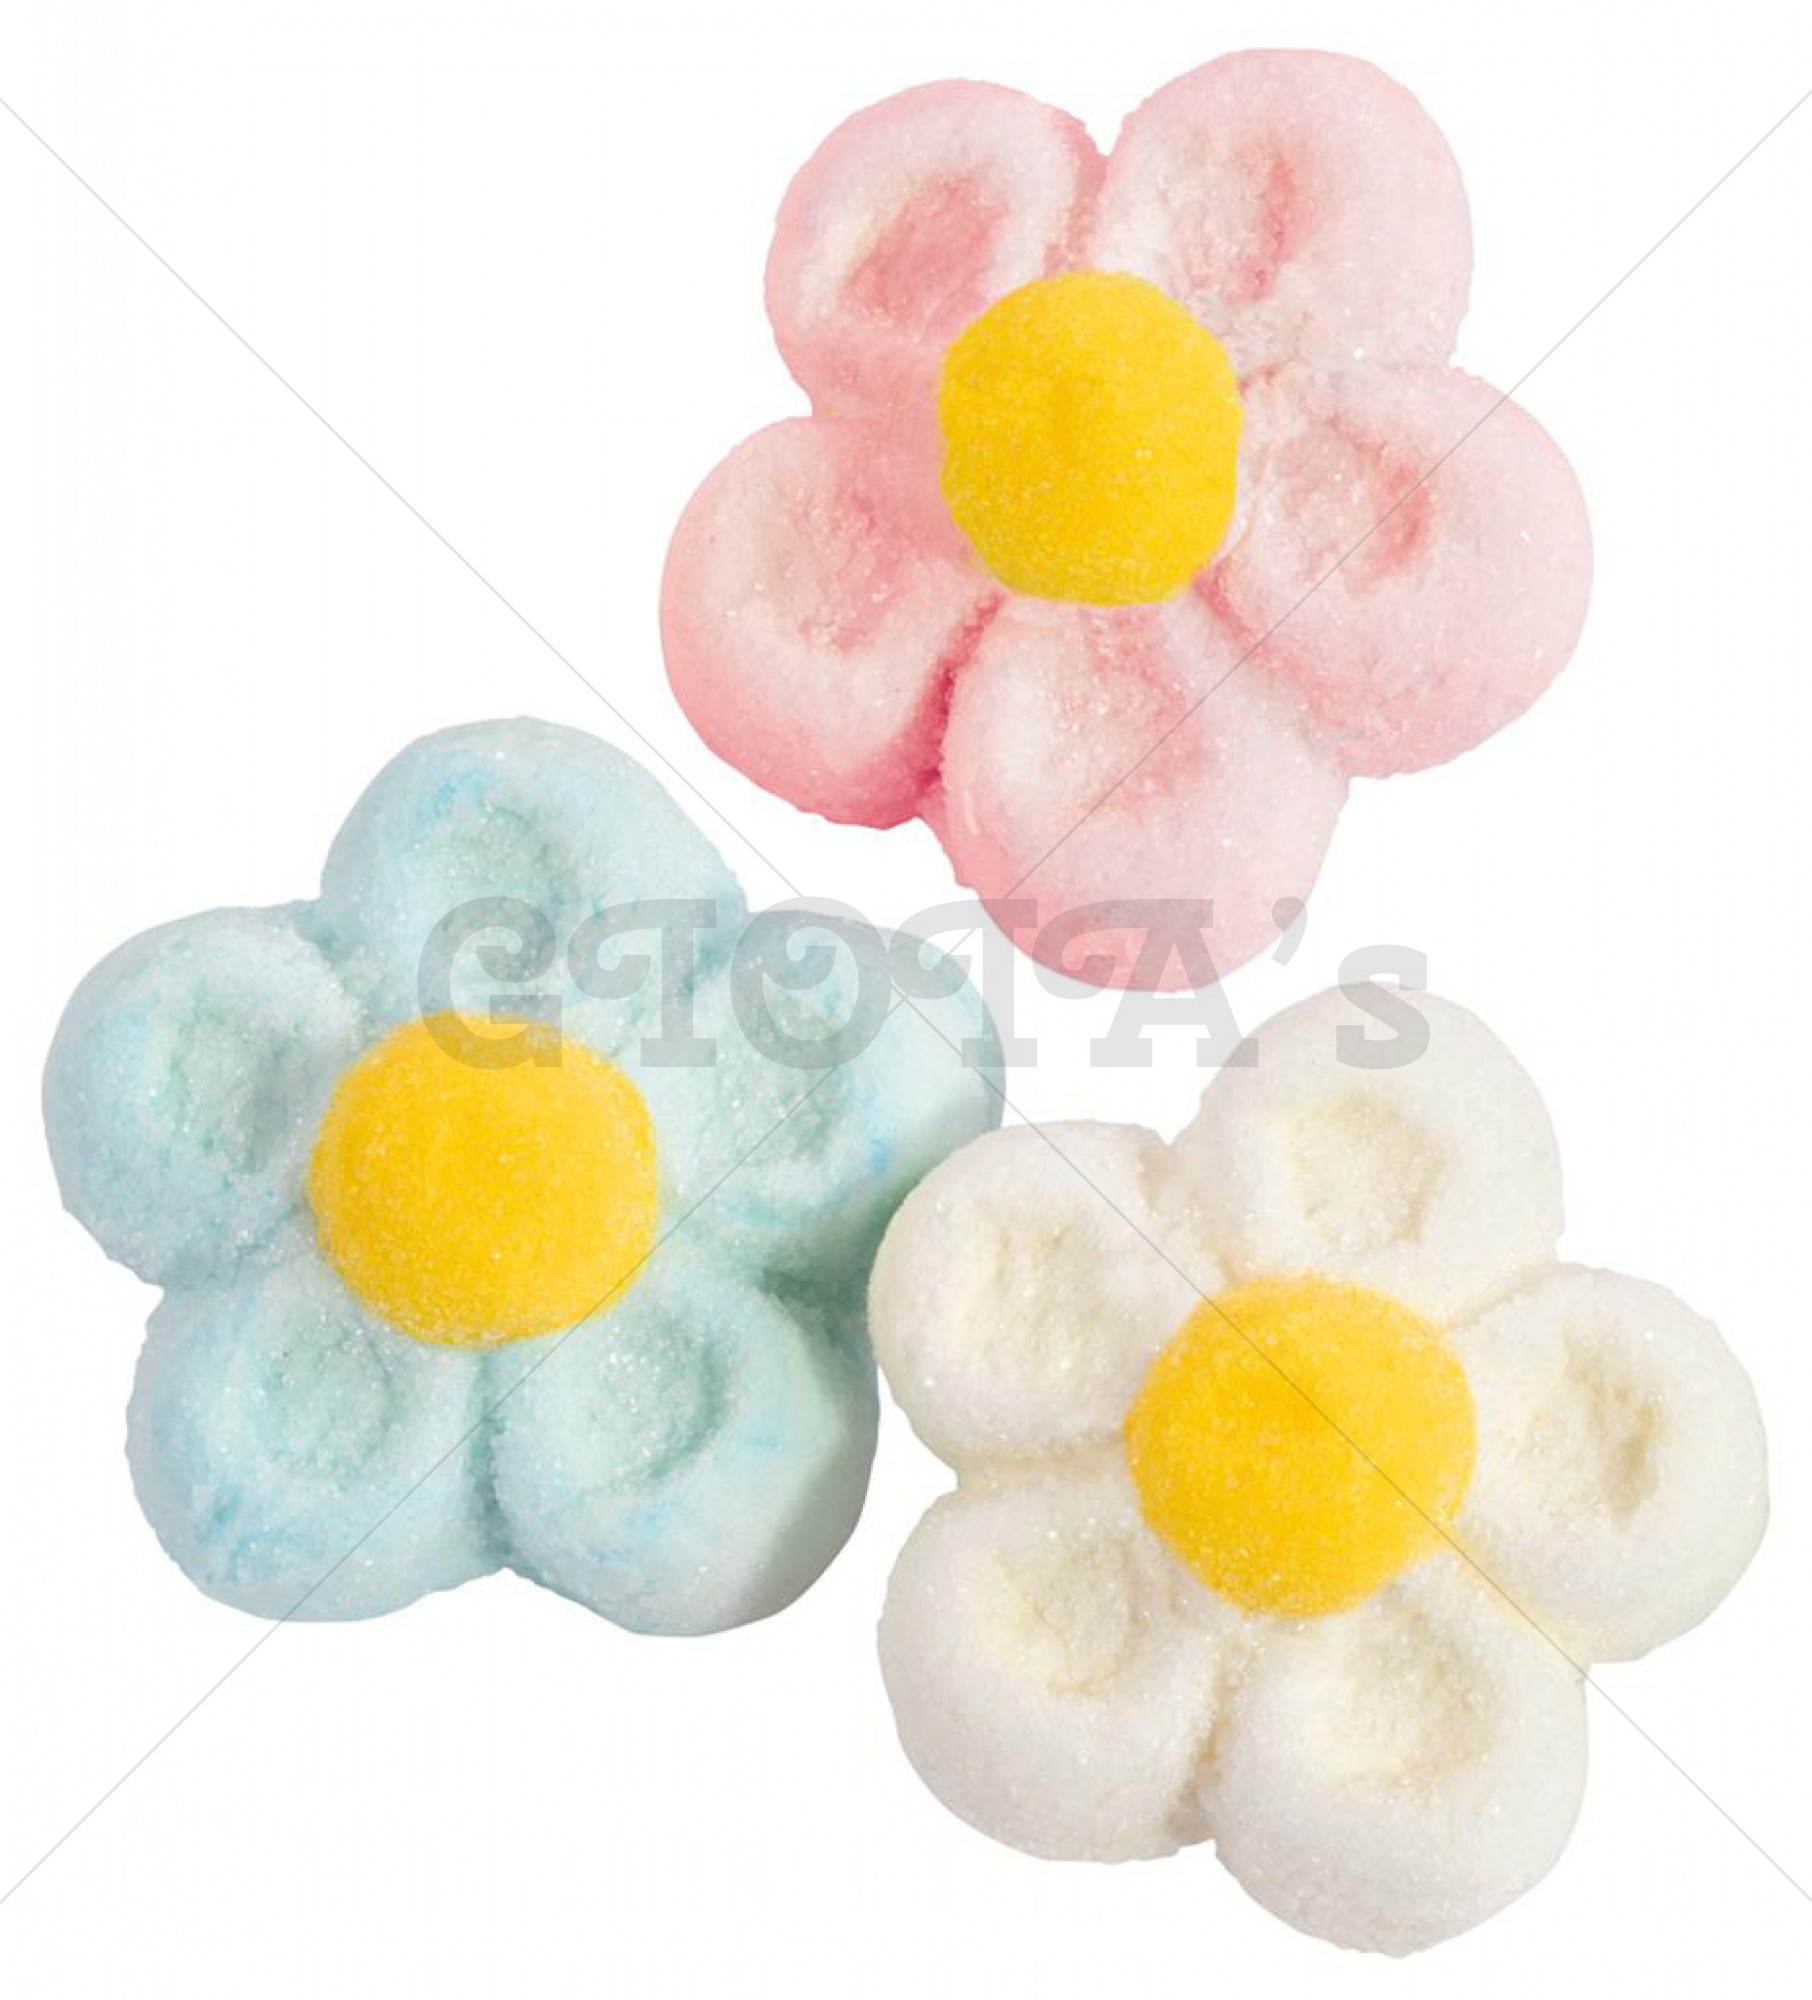 Marshmallow Bloemen in drie verschillende kleuren roze, blauw en wit. Prijs is per 5 stuks